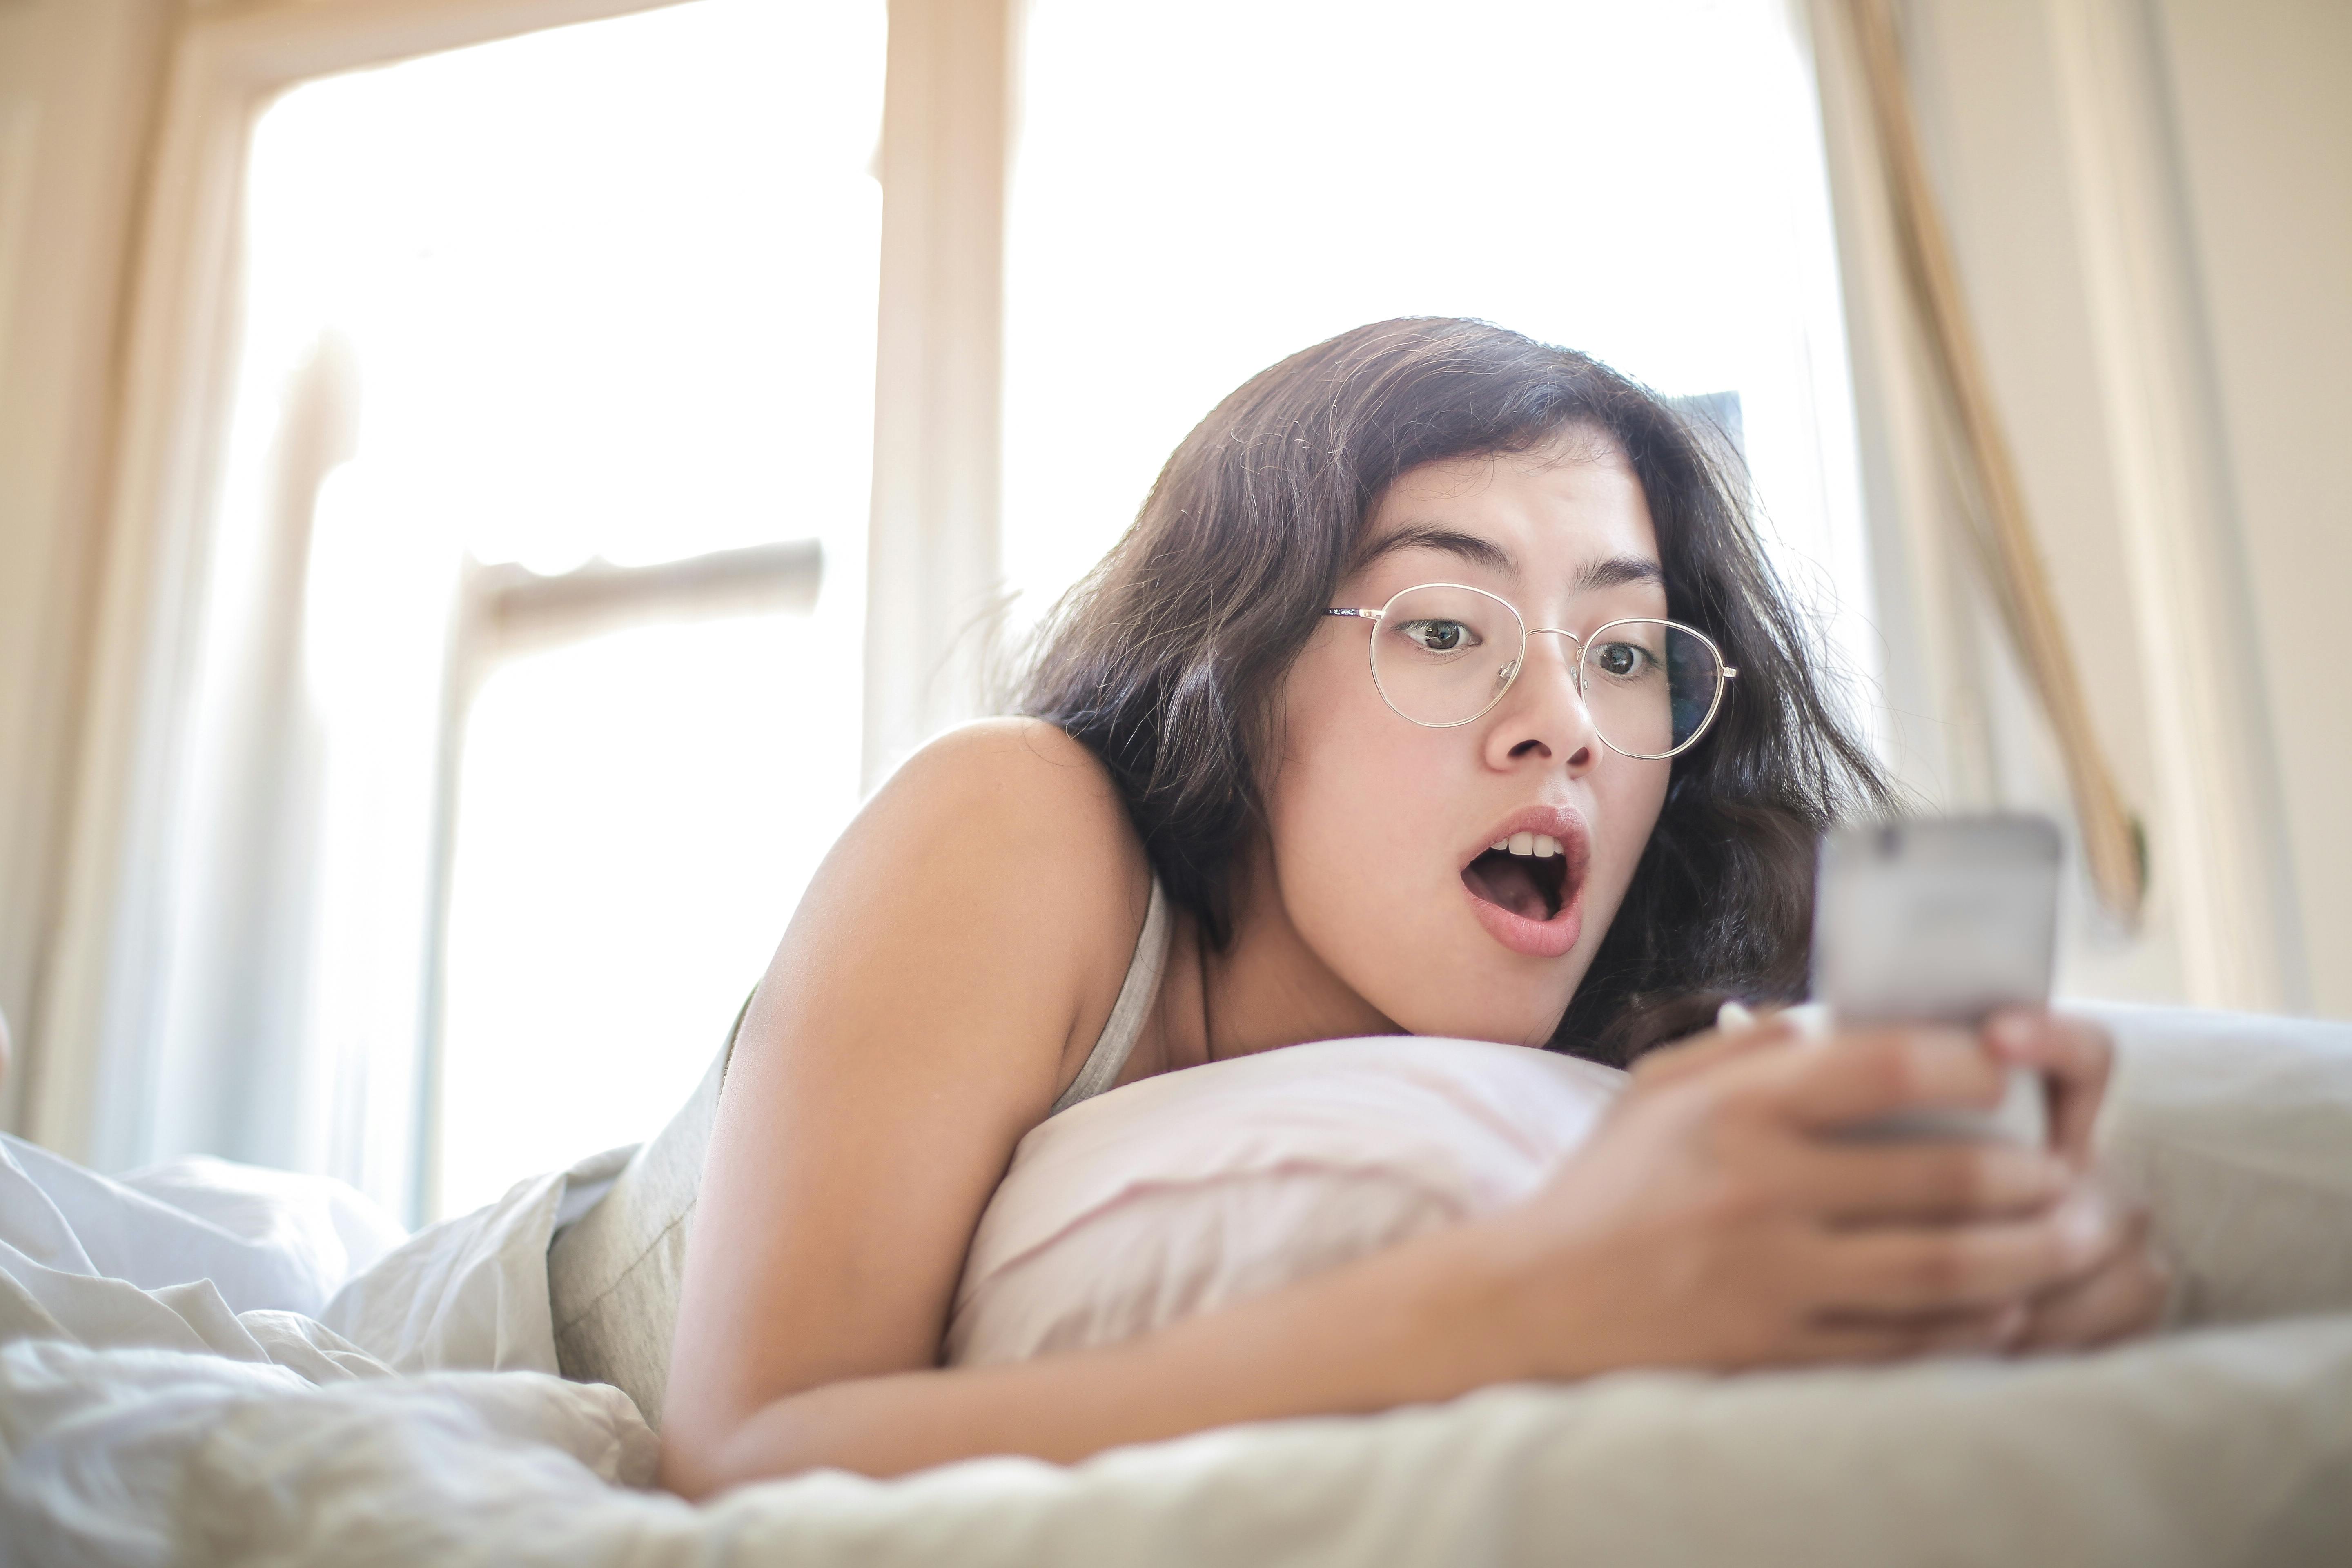 Eine Frau, die auf dem Bett liegt und ein Smartphone hält | Quelle: Pexels